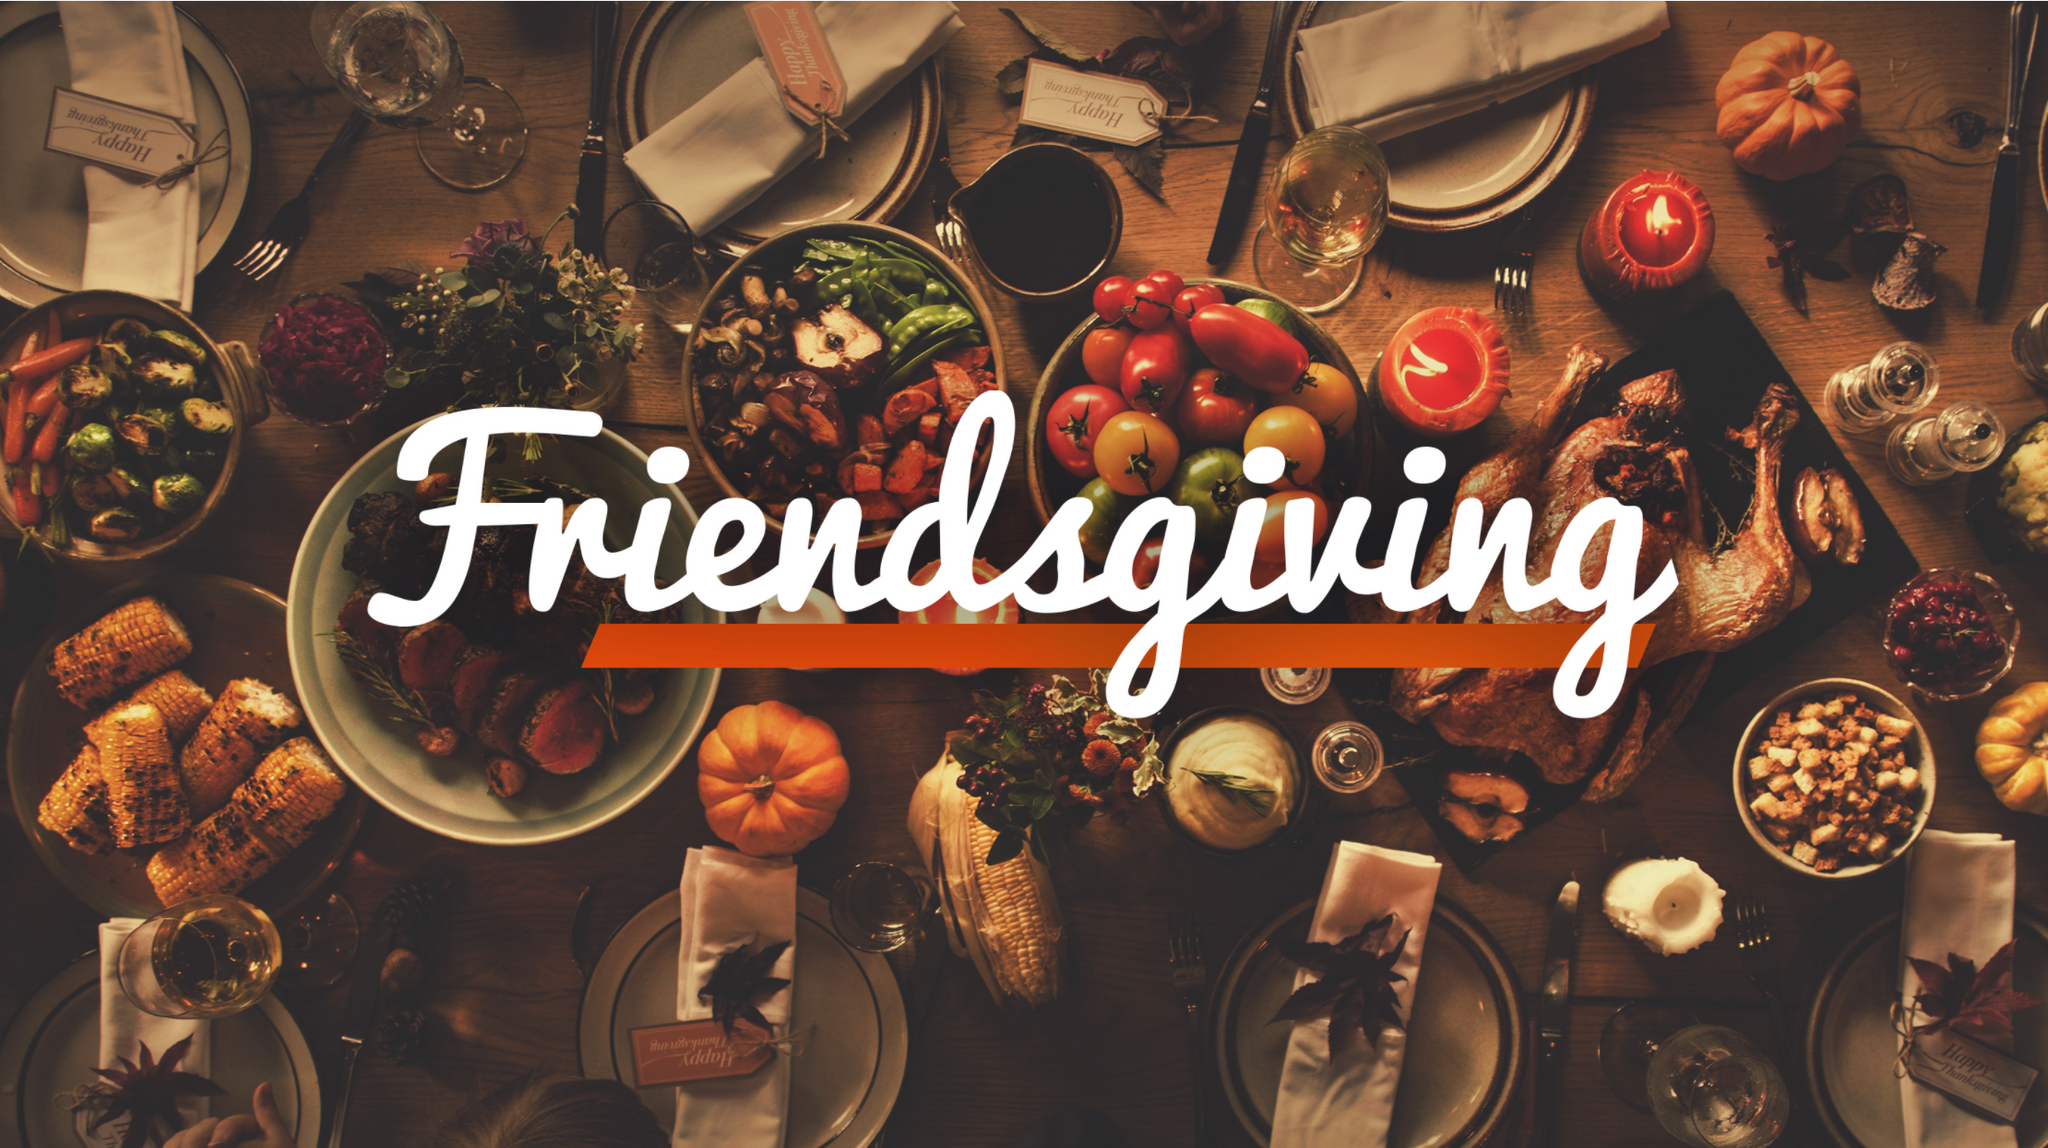 Friendsgiving: Three Ways to Celebrate Friendsgiving